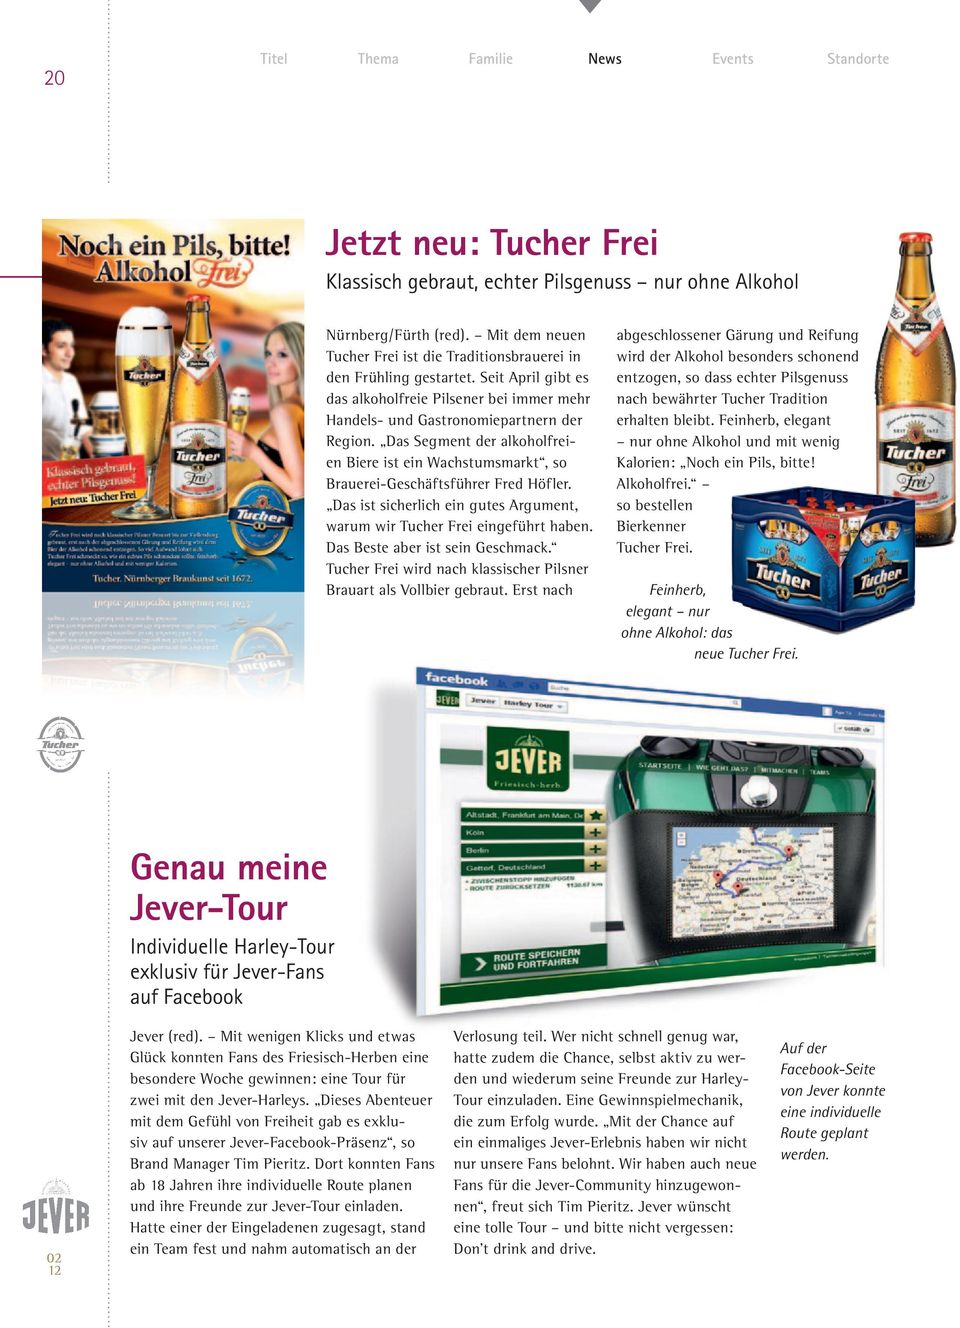 Das Segment der alkoholfreien Biere ist ein Wachstumsmarkt, so Brauerei-Geschäftsführer Fred Höfler. Das ist sicherlich ein gutes Argument, warum wir Tucher Frei eingeführt haben.